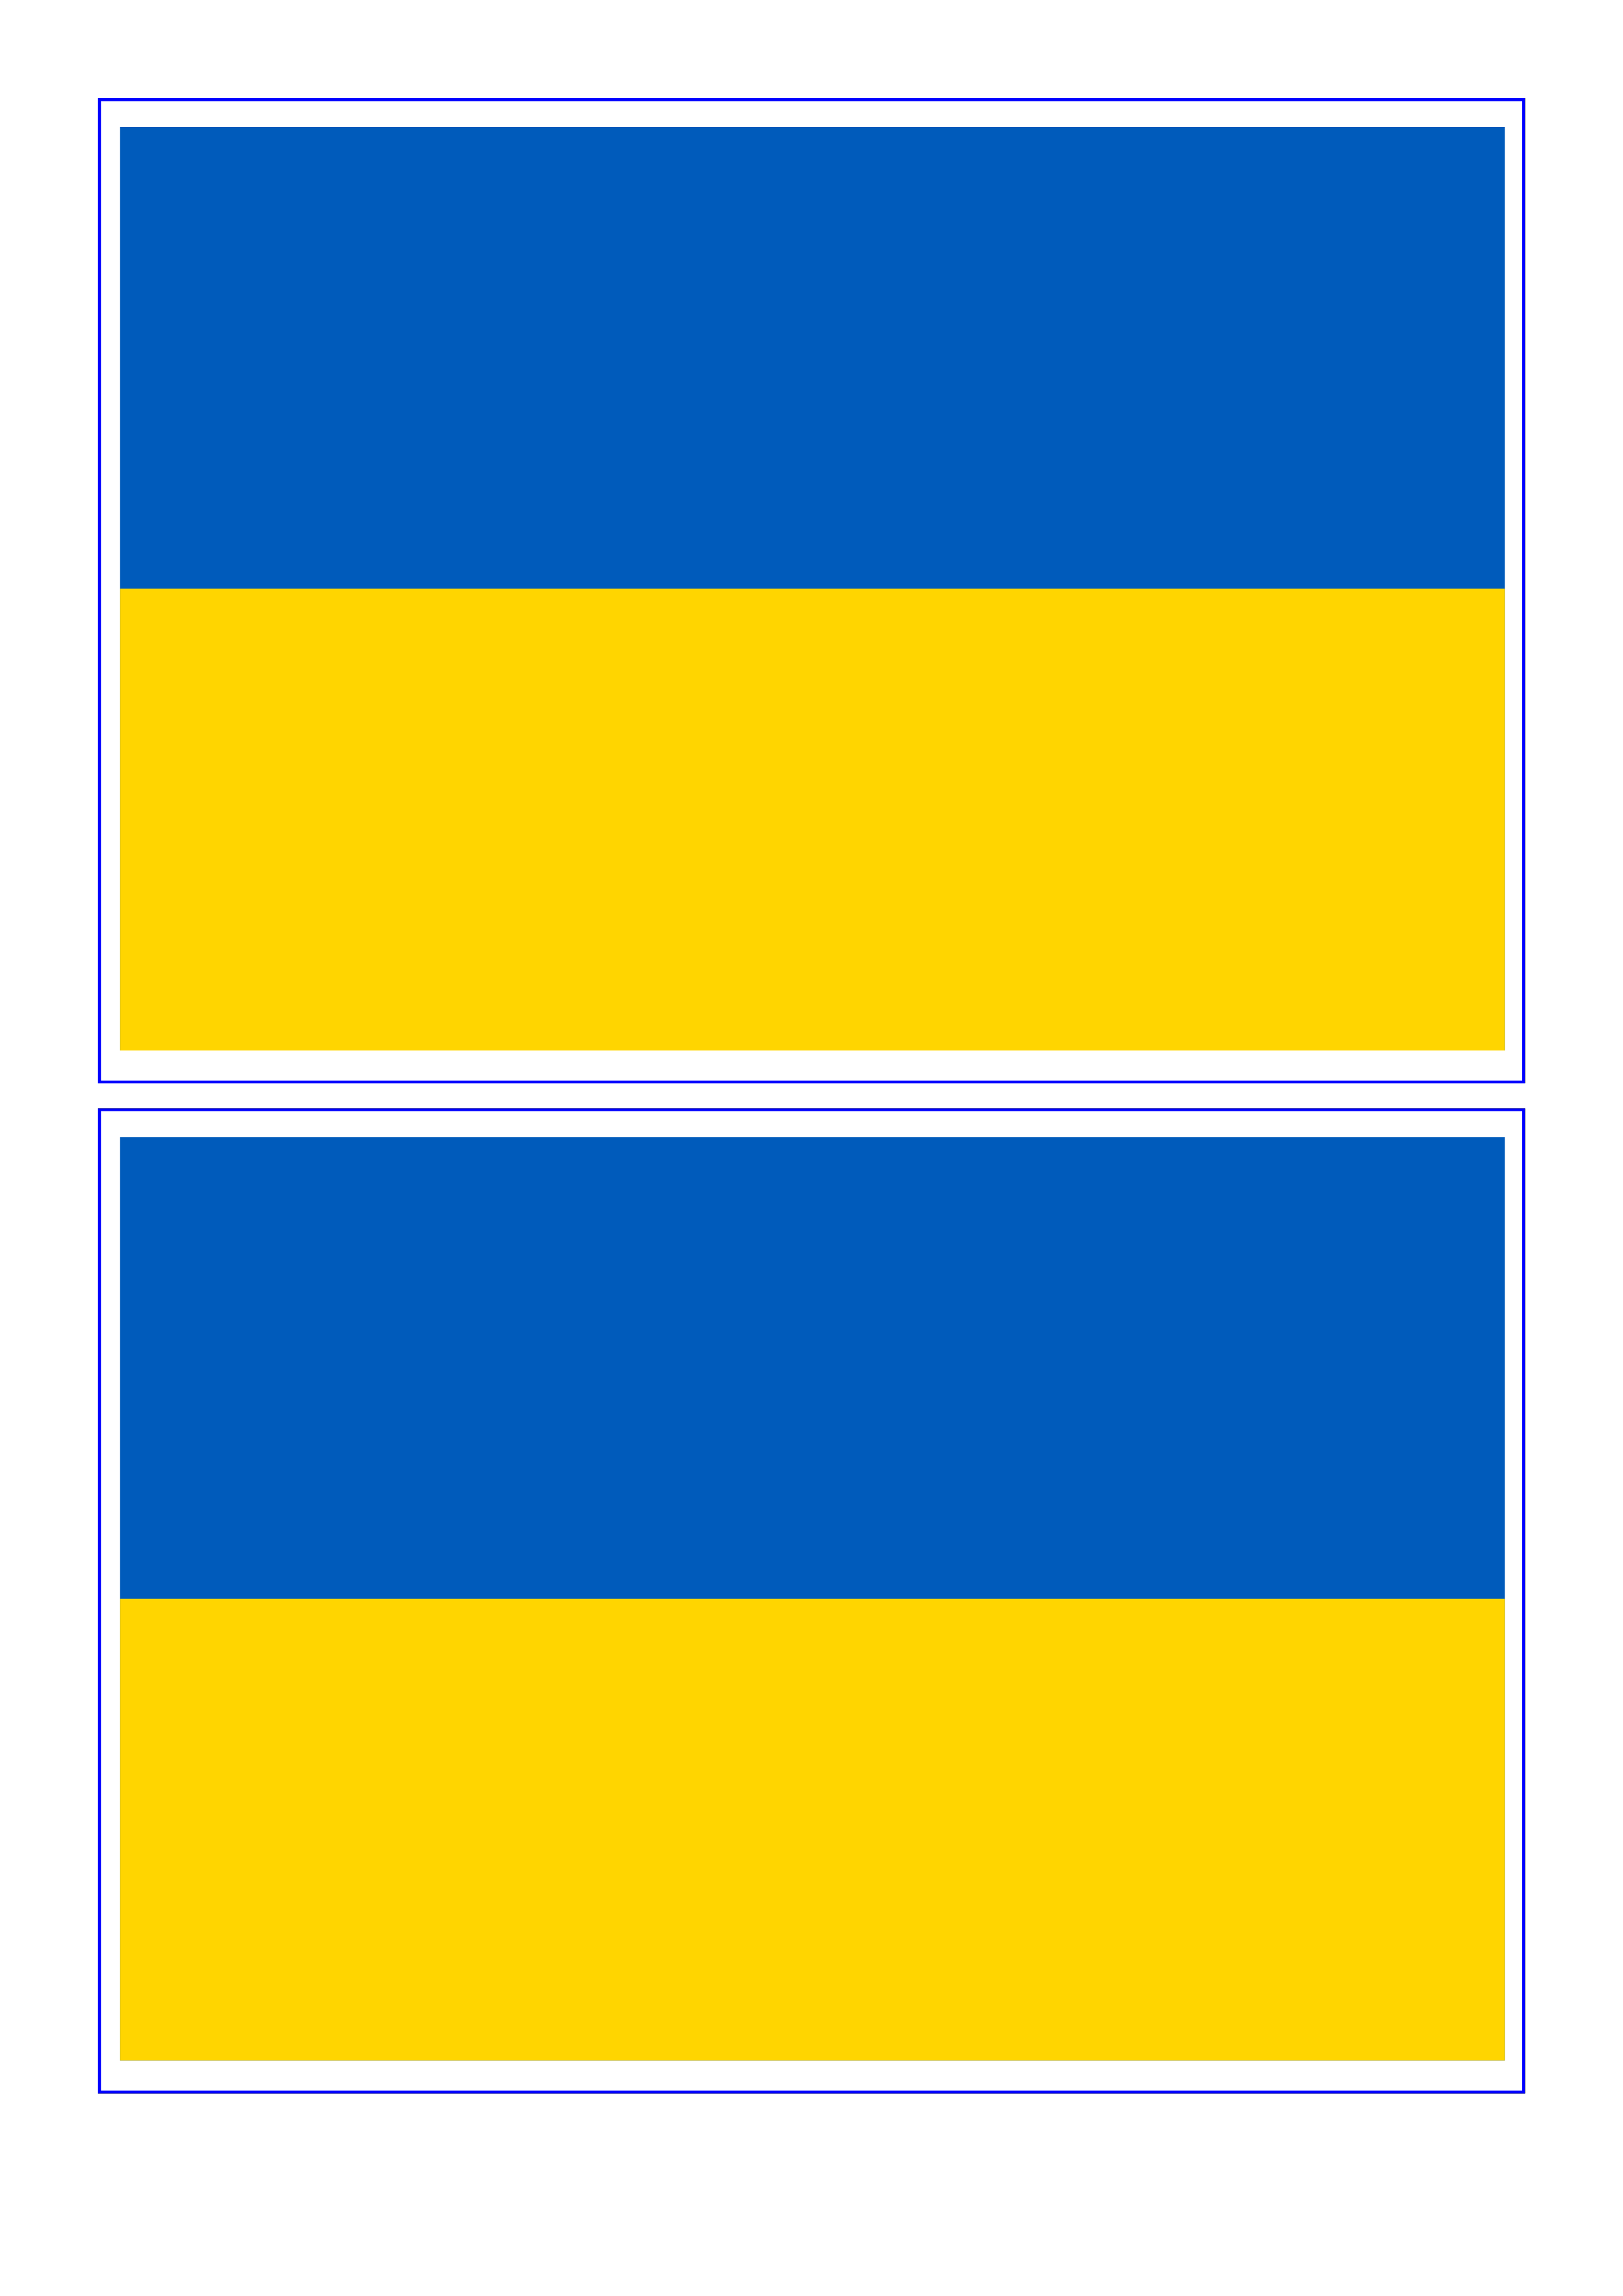 Oekraïne Vlag main image